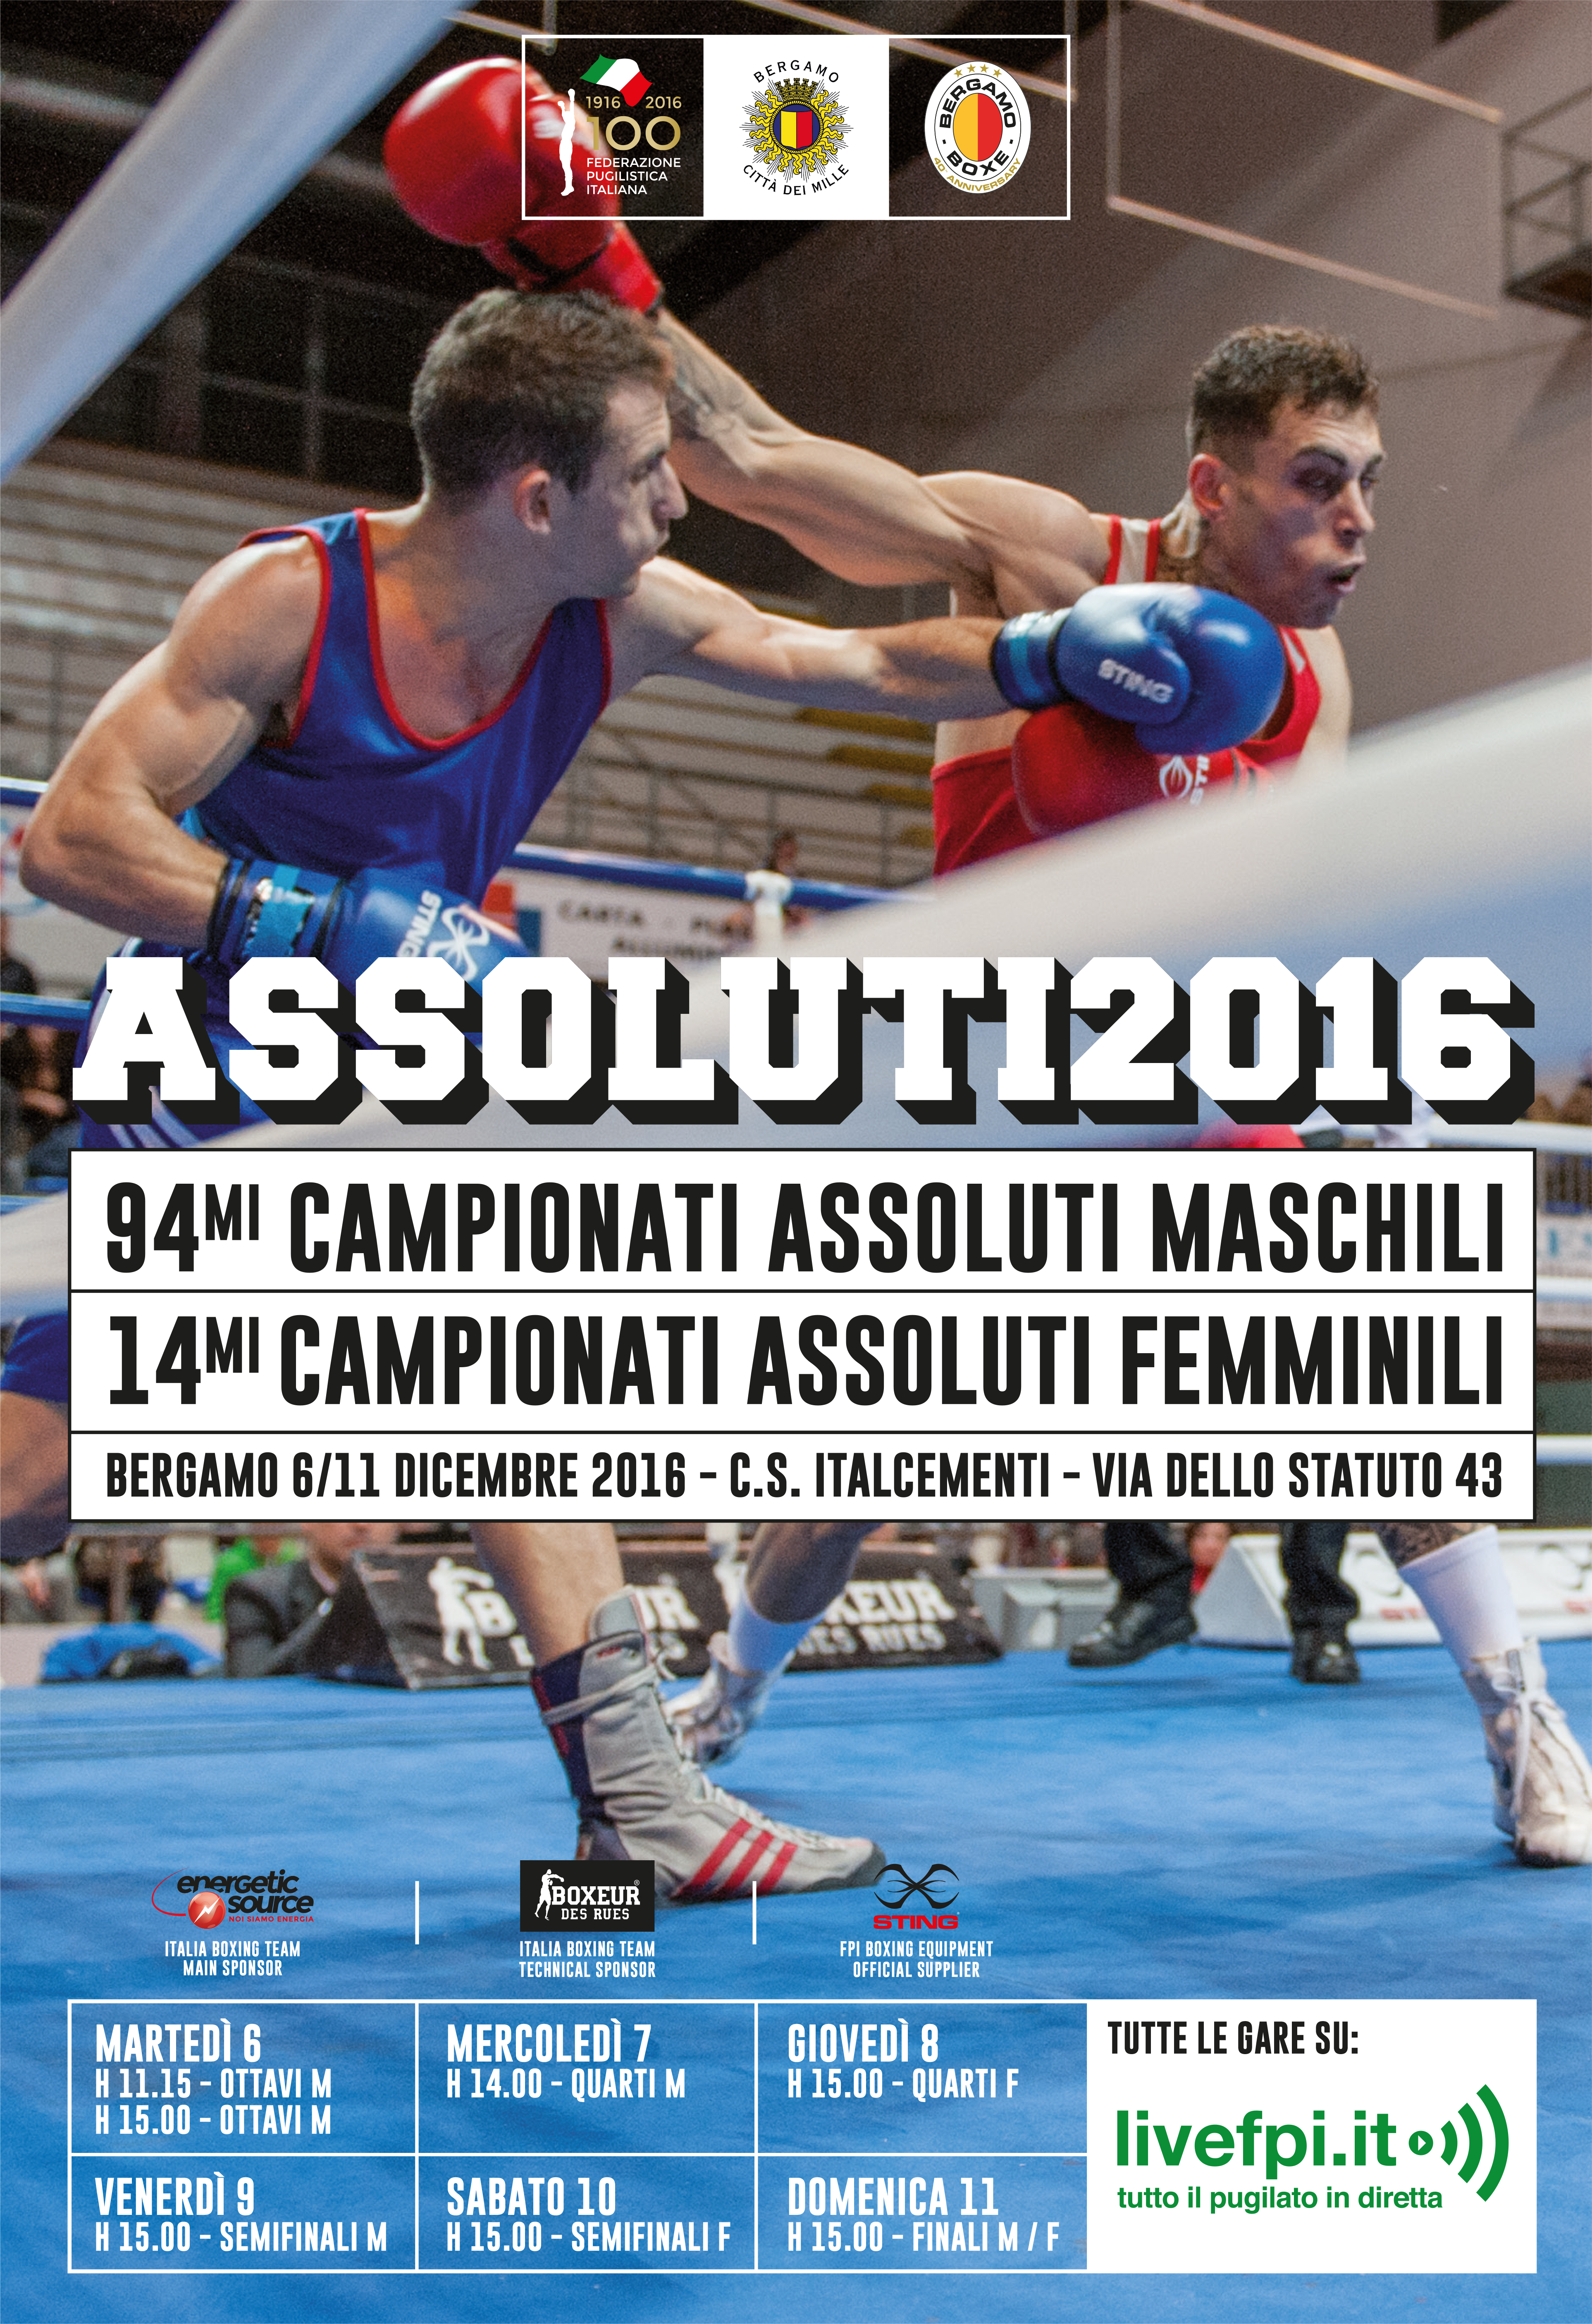 Campionati Assoluti M/F 2016 Bergamo 6-11 Dicembre: La Locandina Ufficiale #Assoluti2016